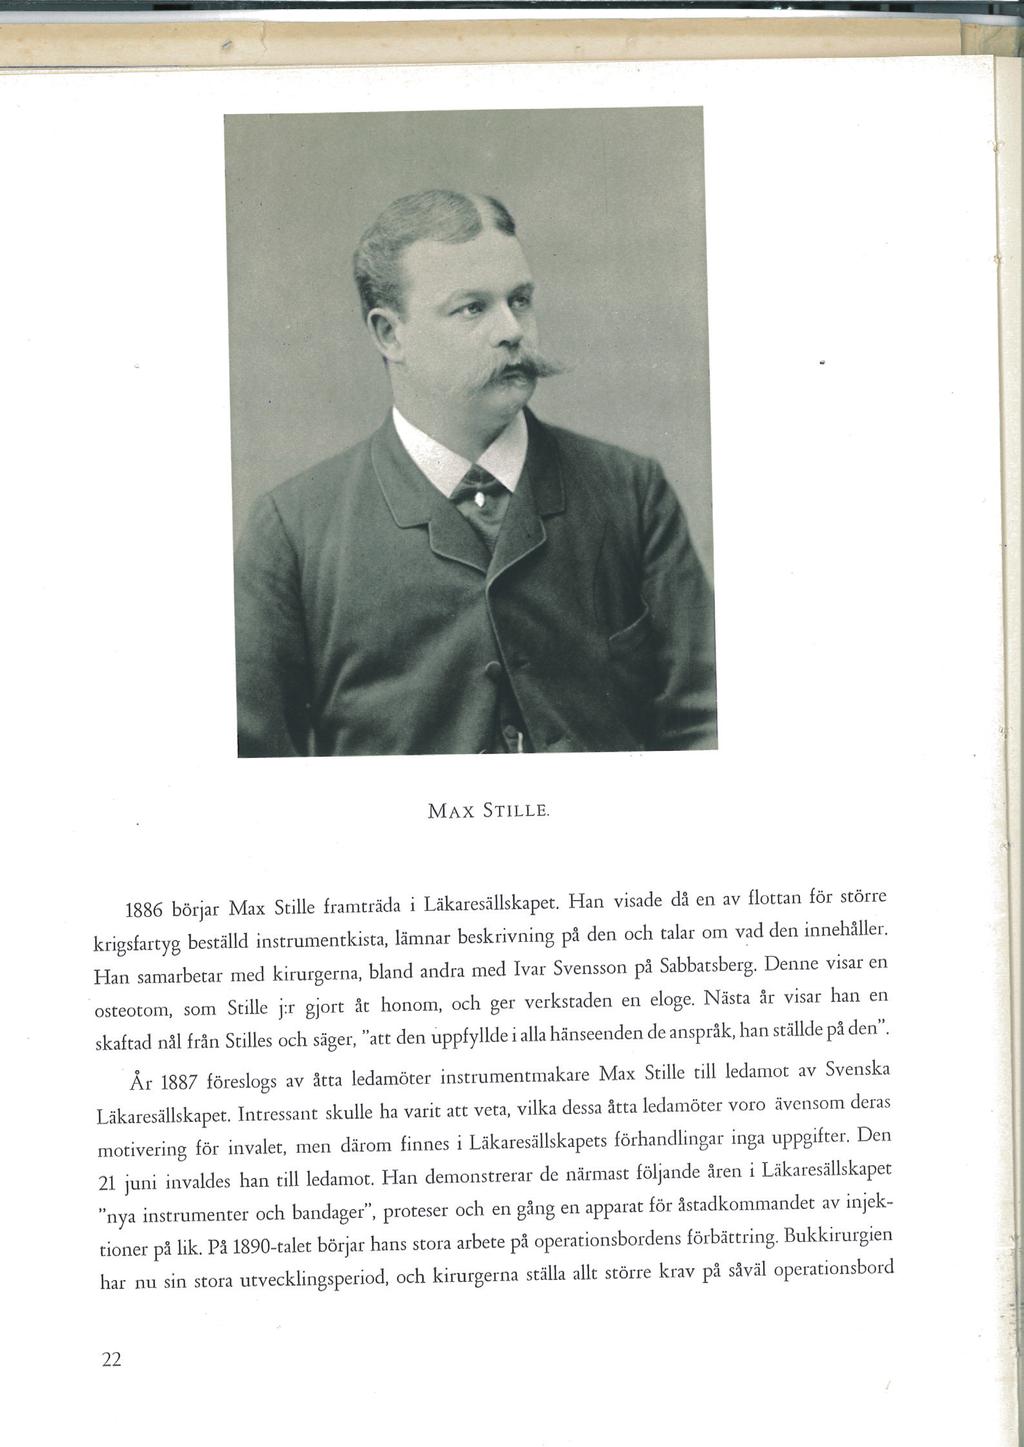 Historien om Stille - 170 år Max Stille 1886, vid 32 års ålder, började Max Stille framträda i Läkaresällskapet, och valdes in som ledamot redan 1887.